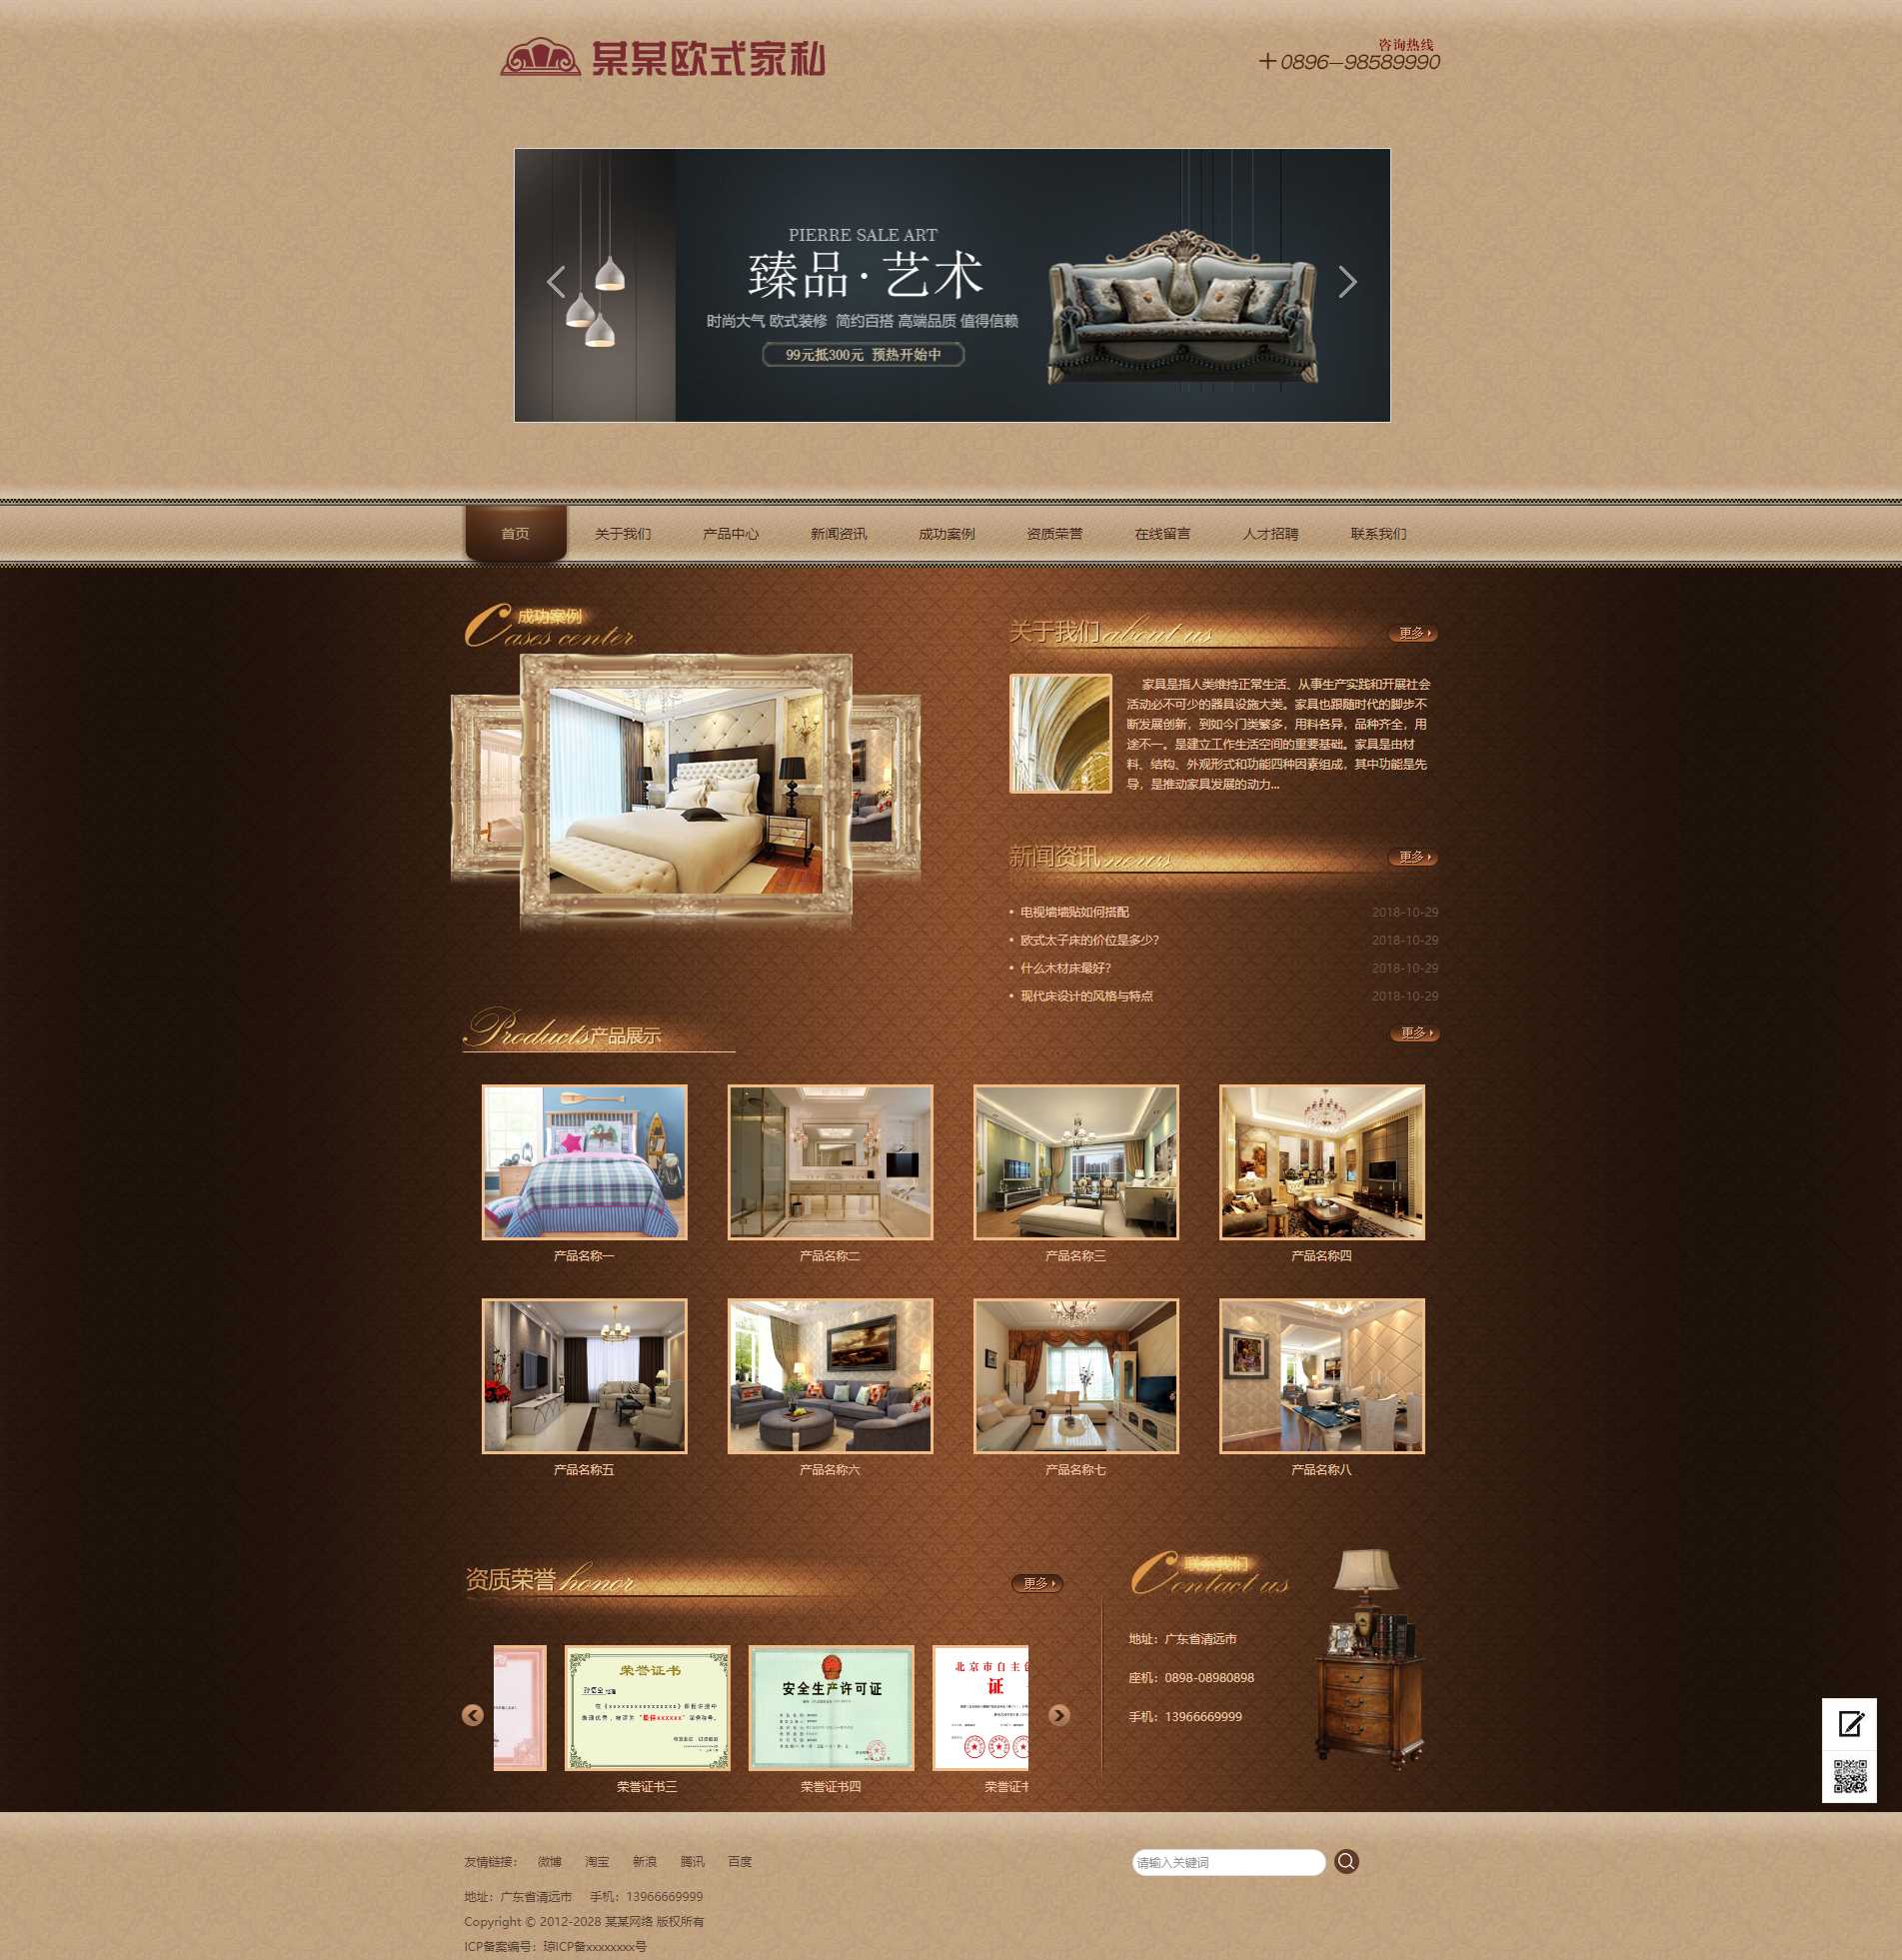 A544 家具企业-古典欧式风格网站模版源代码